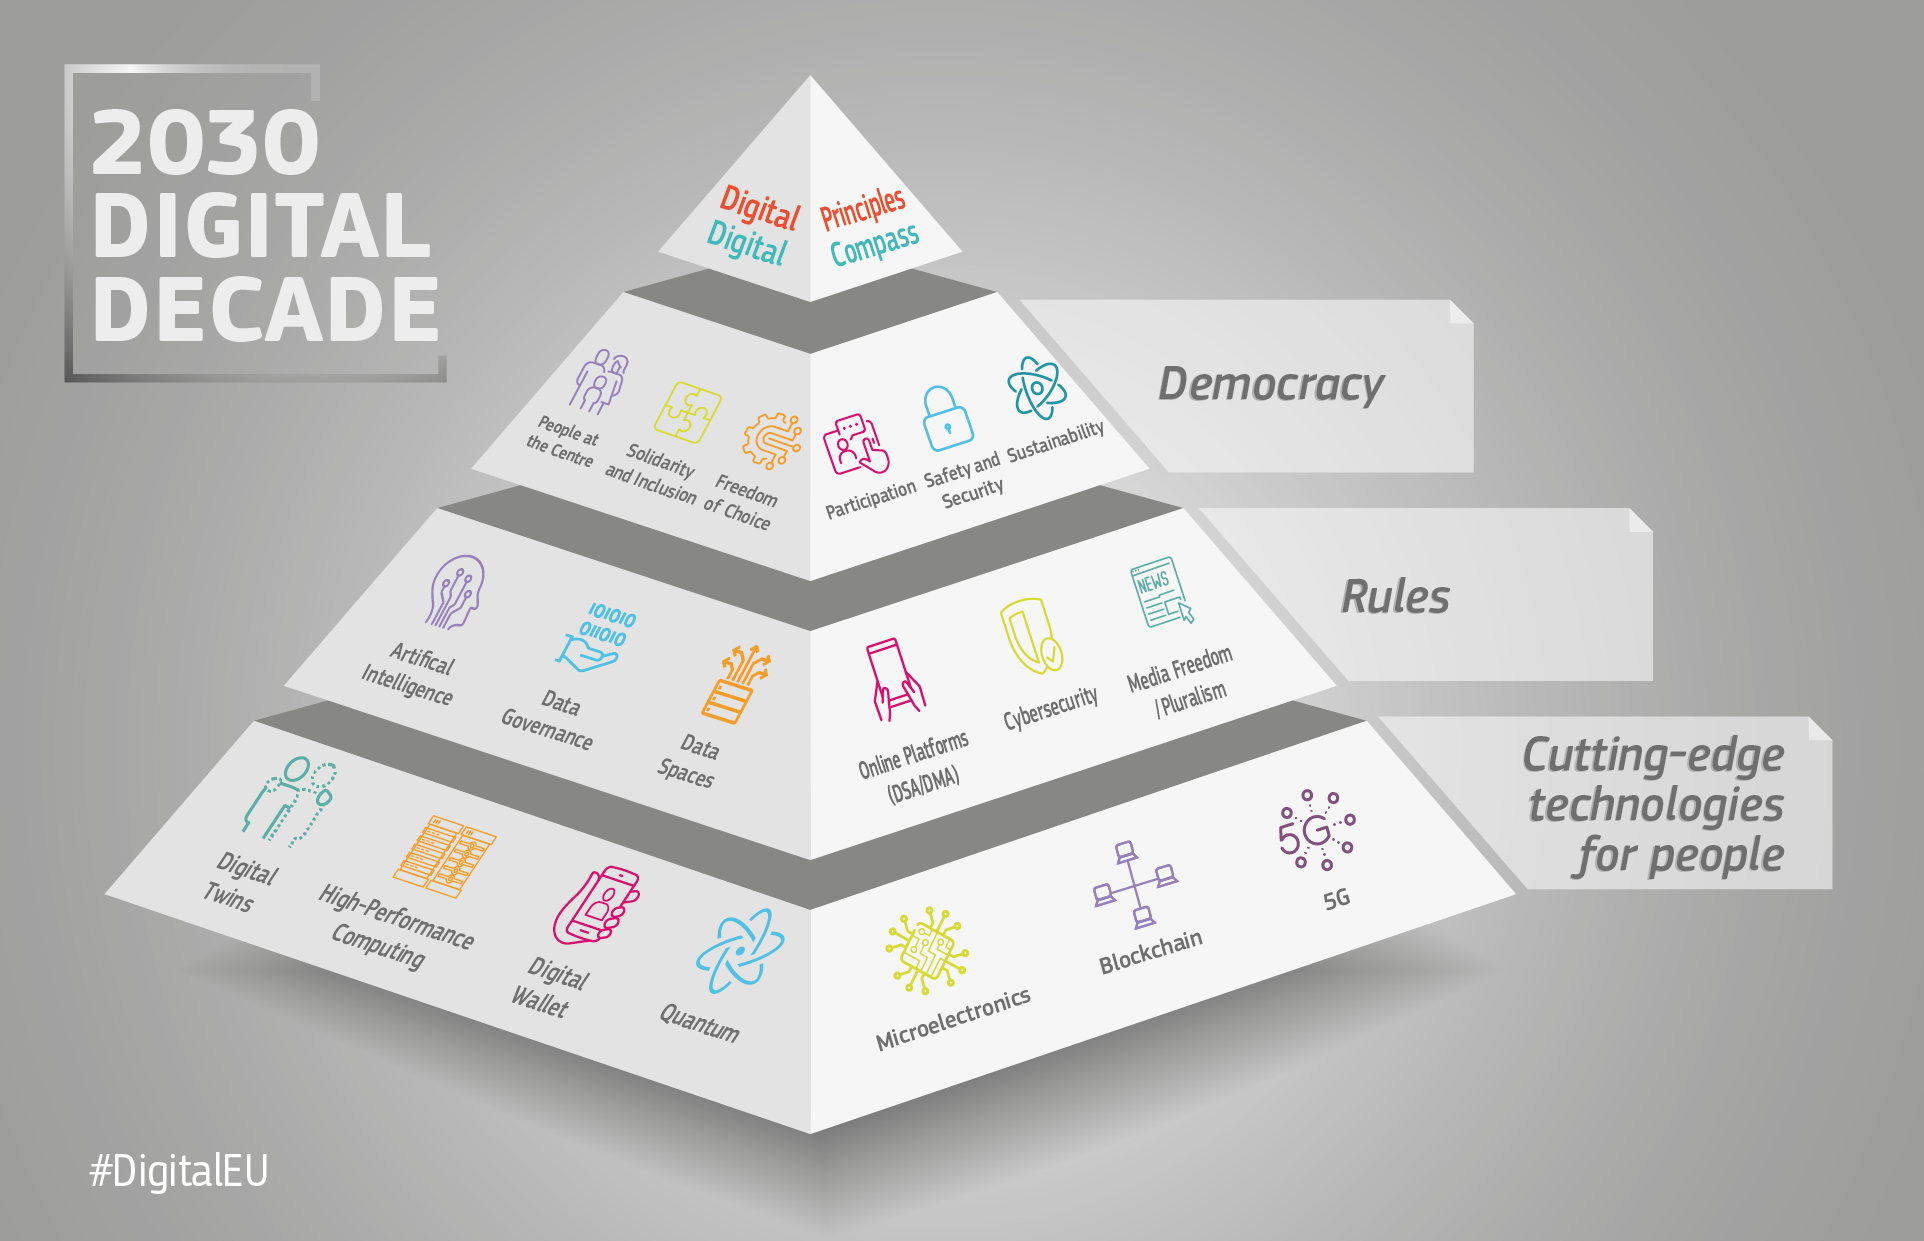 πυραμίδα που δείχνει τη σύνδεση των πολιτικών και των πρωτοβουλιών για την ψηφιακή δεκαετία